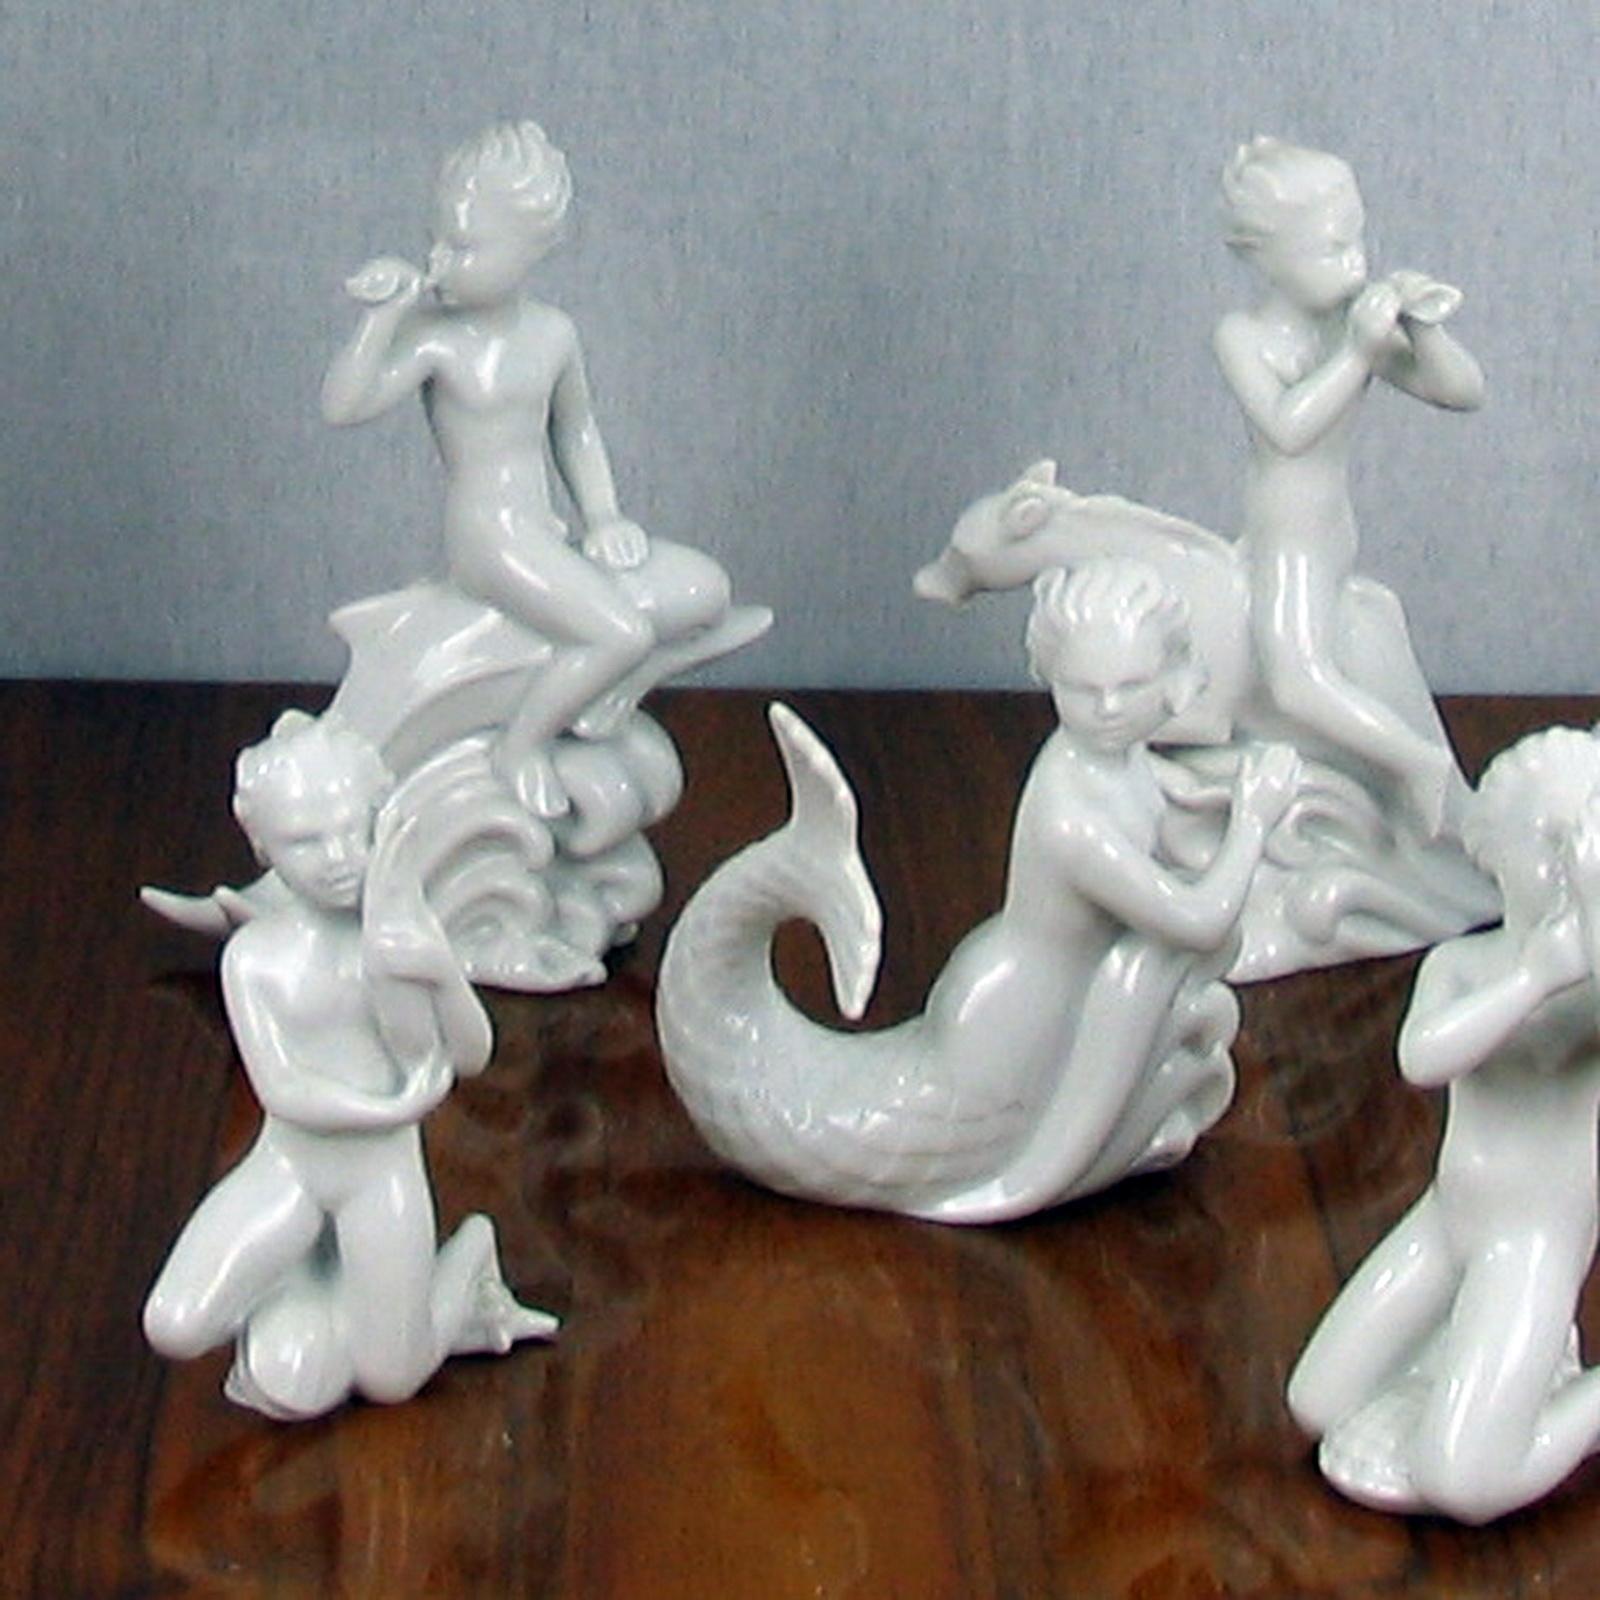 Harald Salomon pour Rörstrand, ensemble de six figurines en émail blanc Blanc de Chine
Figurines en porcelaine blanche de Chine à pâte dure, représentant des personnages fantastiques de la mer, conçues par Harald Salomon 1943-1945. Toutes les